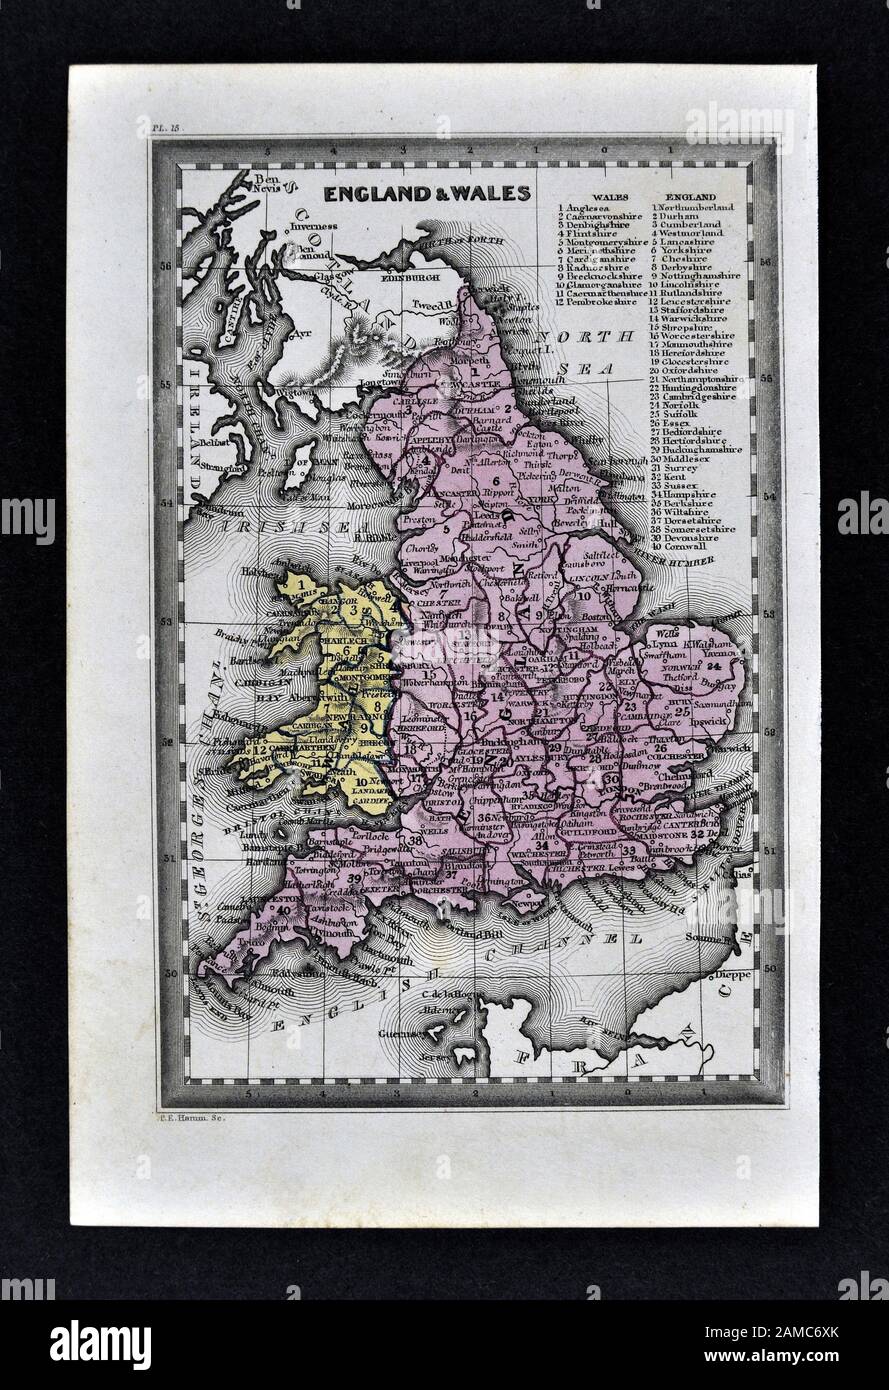 1834 Carey Mappa Inghilterra Galles Gran Bretagna Regno Unito Regno unito Londra Liverpool Manchester Cornwall Oxford Ipswich Foto Stock